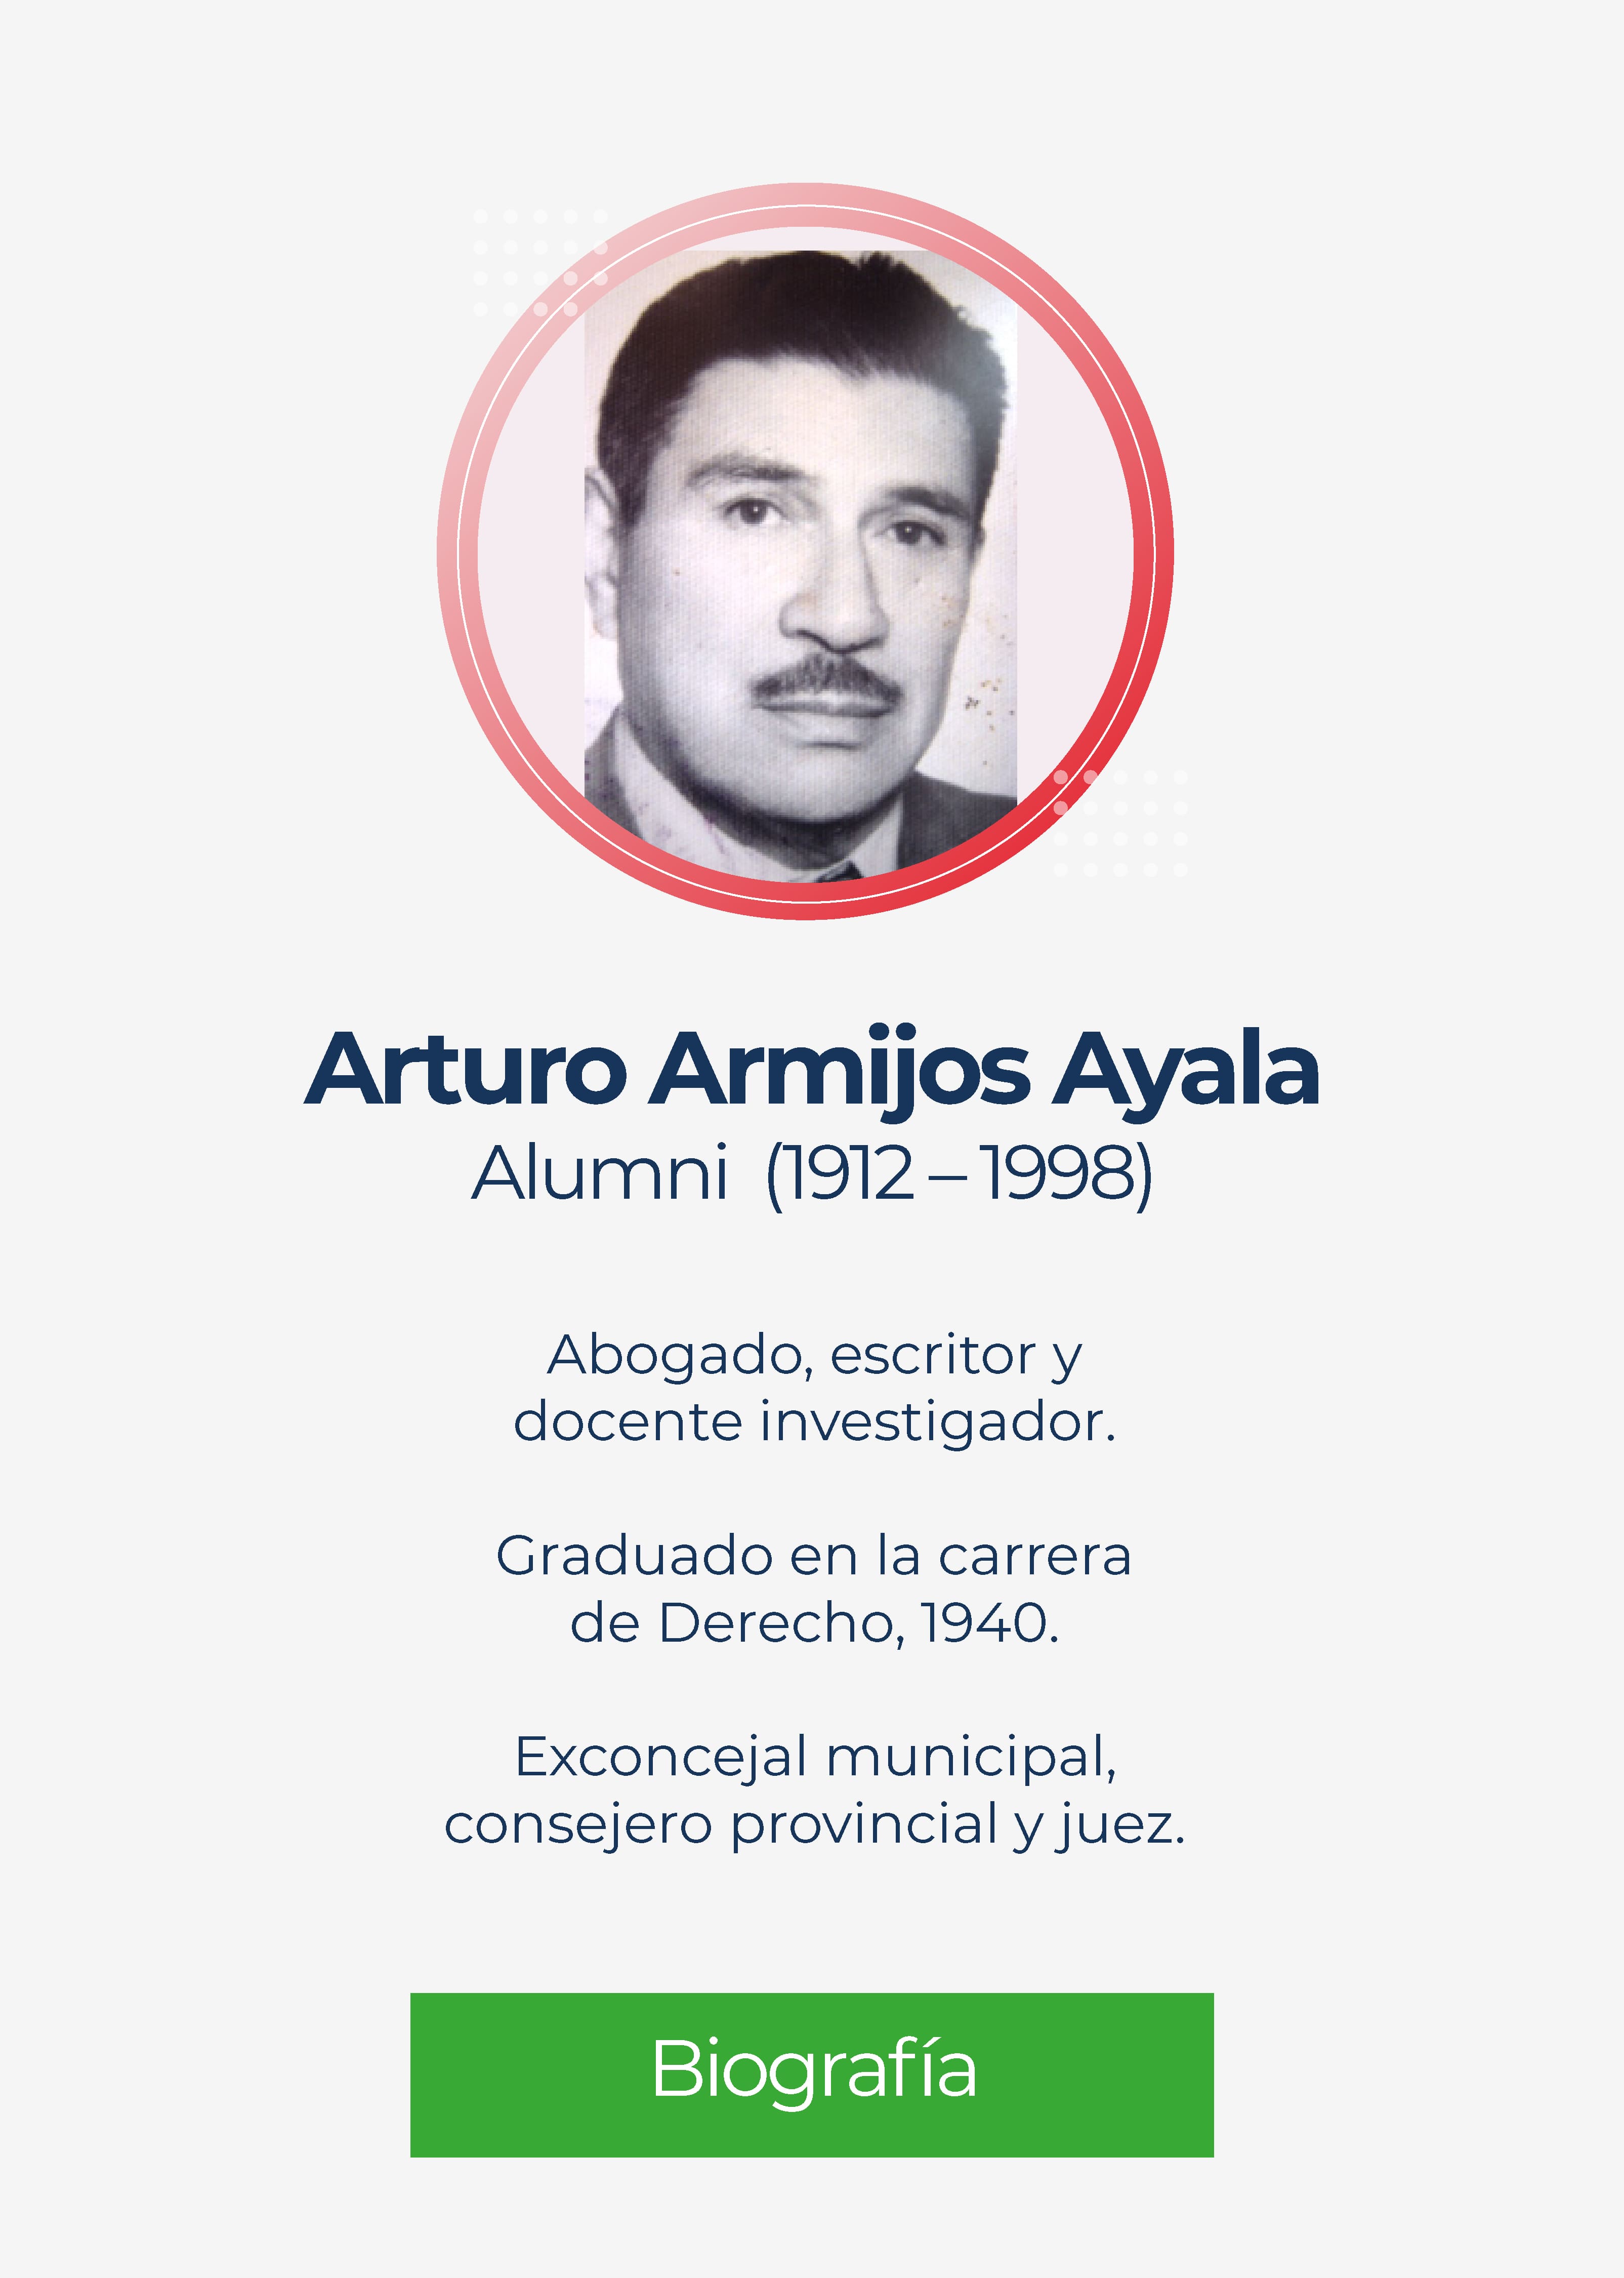 Arturo Armijos Ayala